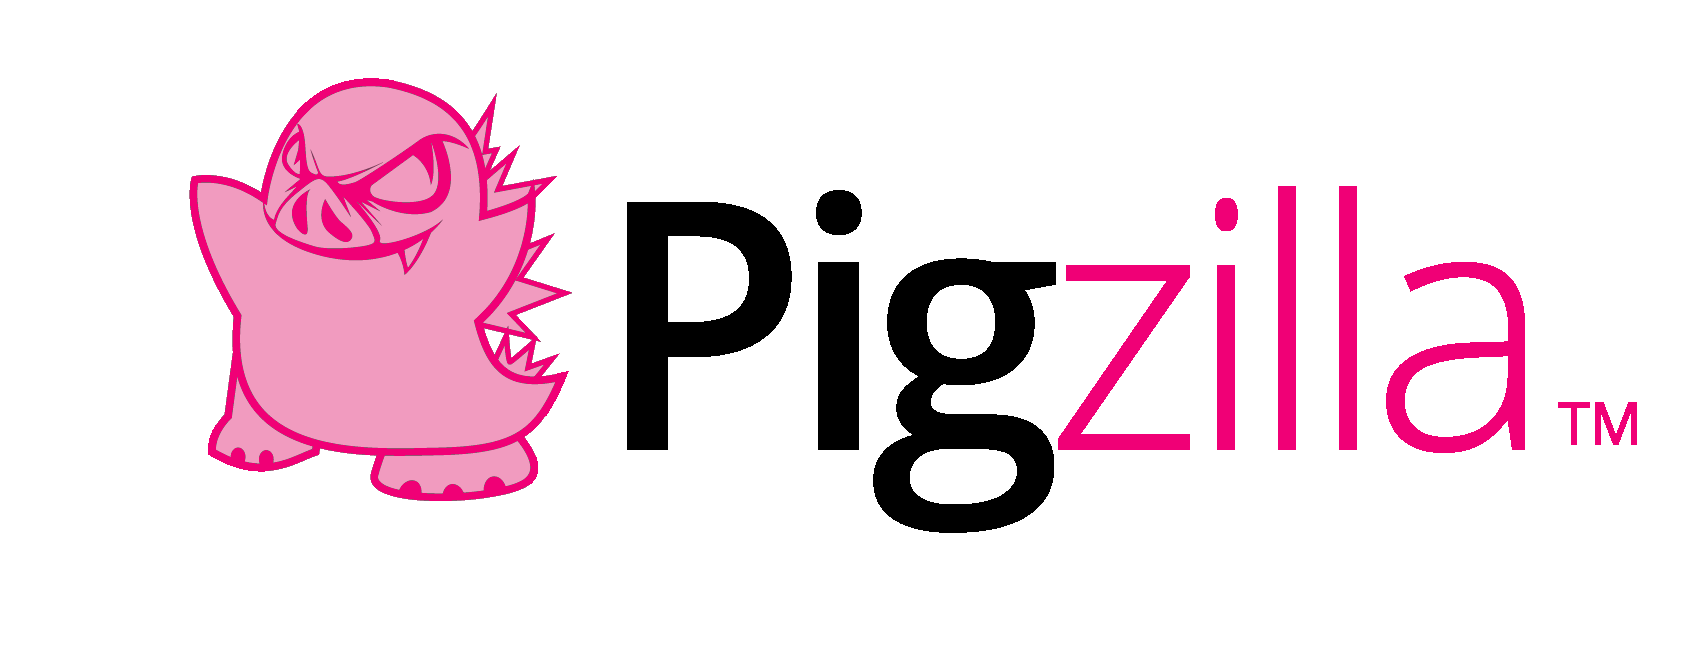 Pigzilla Logo